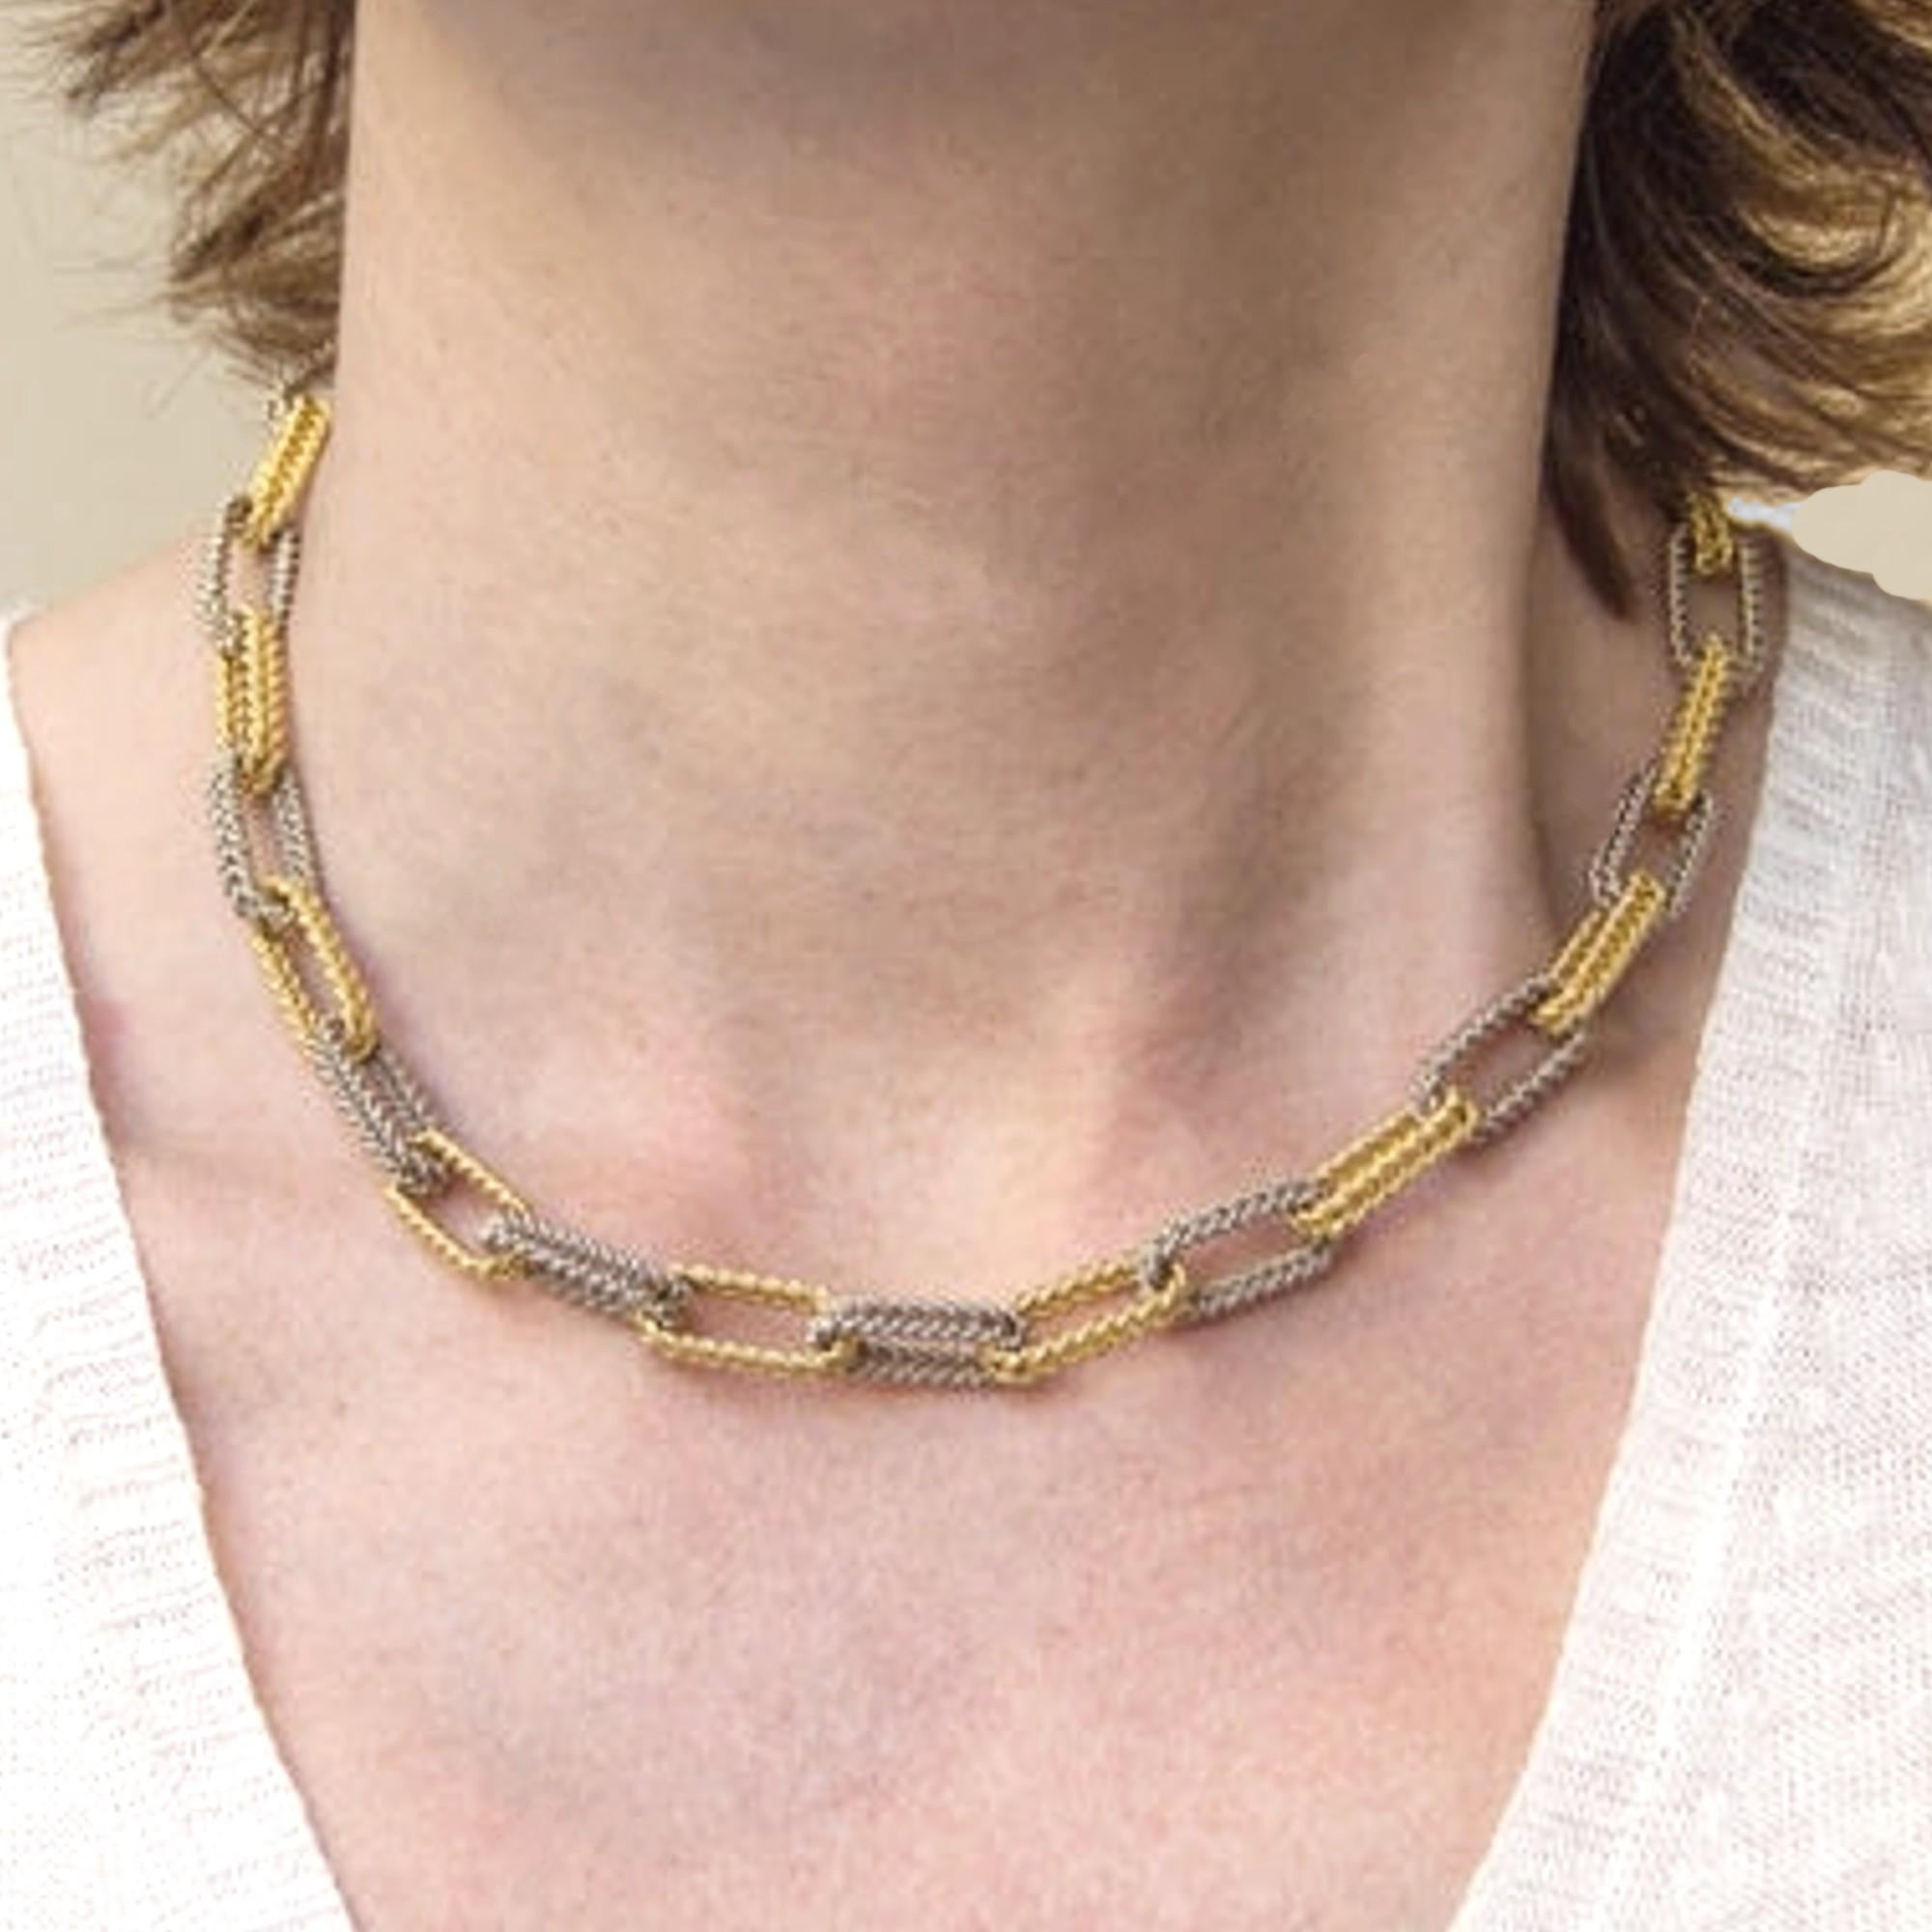 18 cm necklace chain